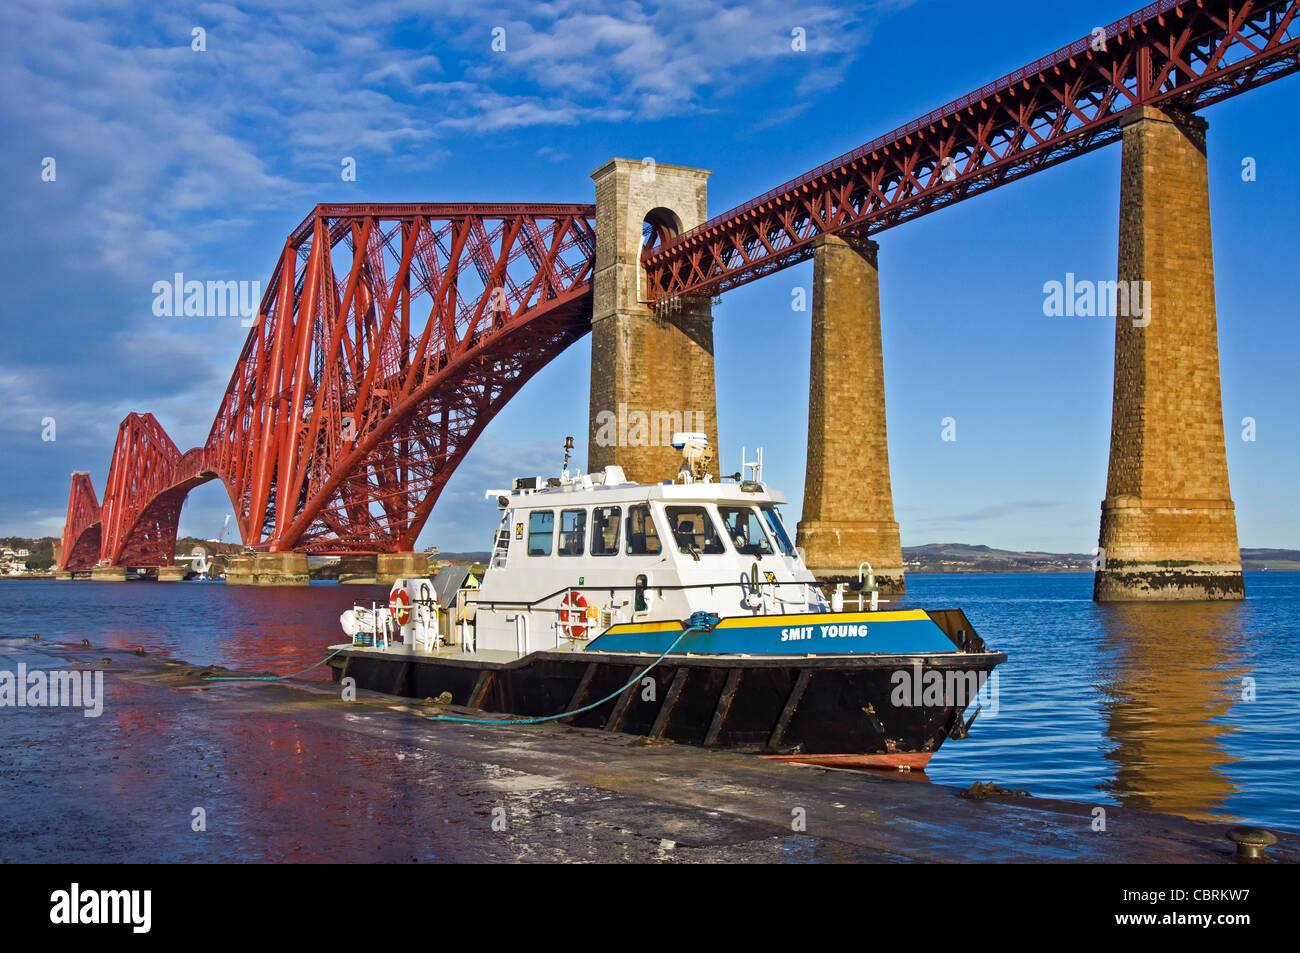 Neu lackiert Forth Rail Bridge gesehen von South Queensferry in Schottland mit vertäuten Motorschiff Smit Young Stockfoto